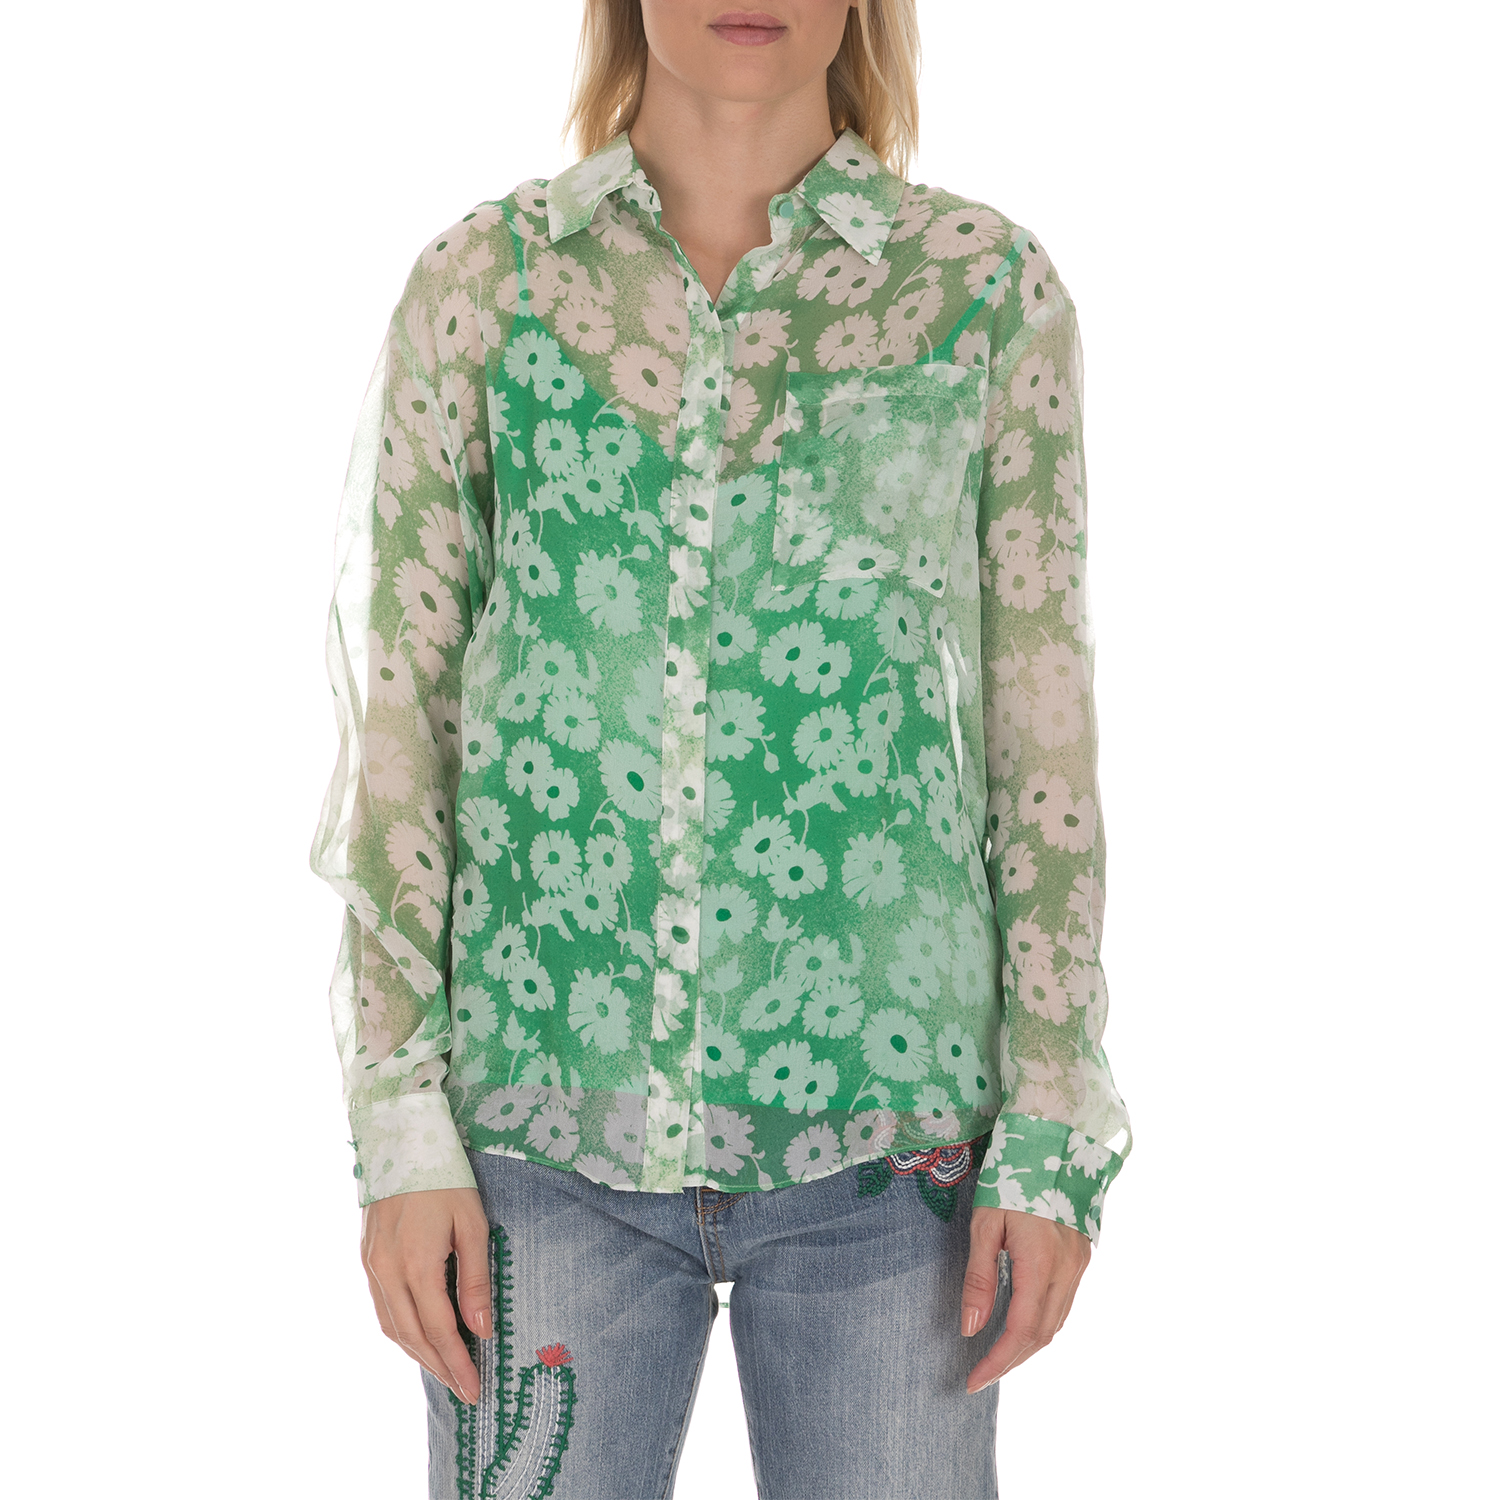 Γυναικεία/Ρούχα/Πουκάμισα/Μακρυμάνικα JUICY COUTURE - Γυναικείο πουκάμισο από 2 κομμάτια JUICY COUTURE WASHED DAISY πράσινο